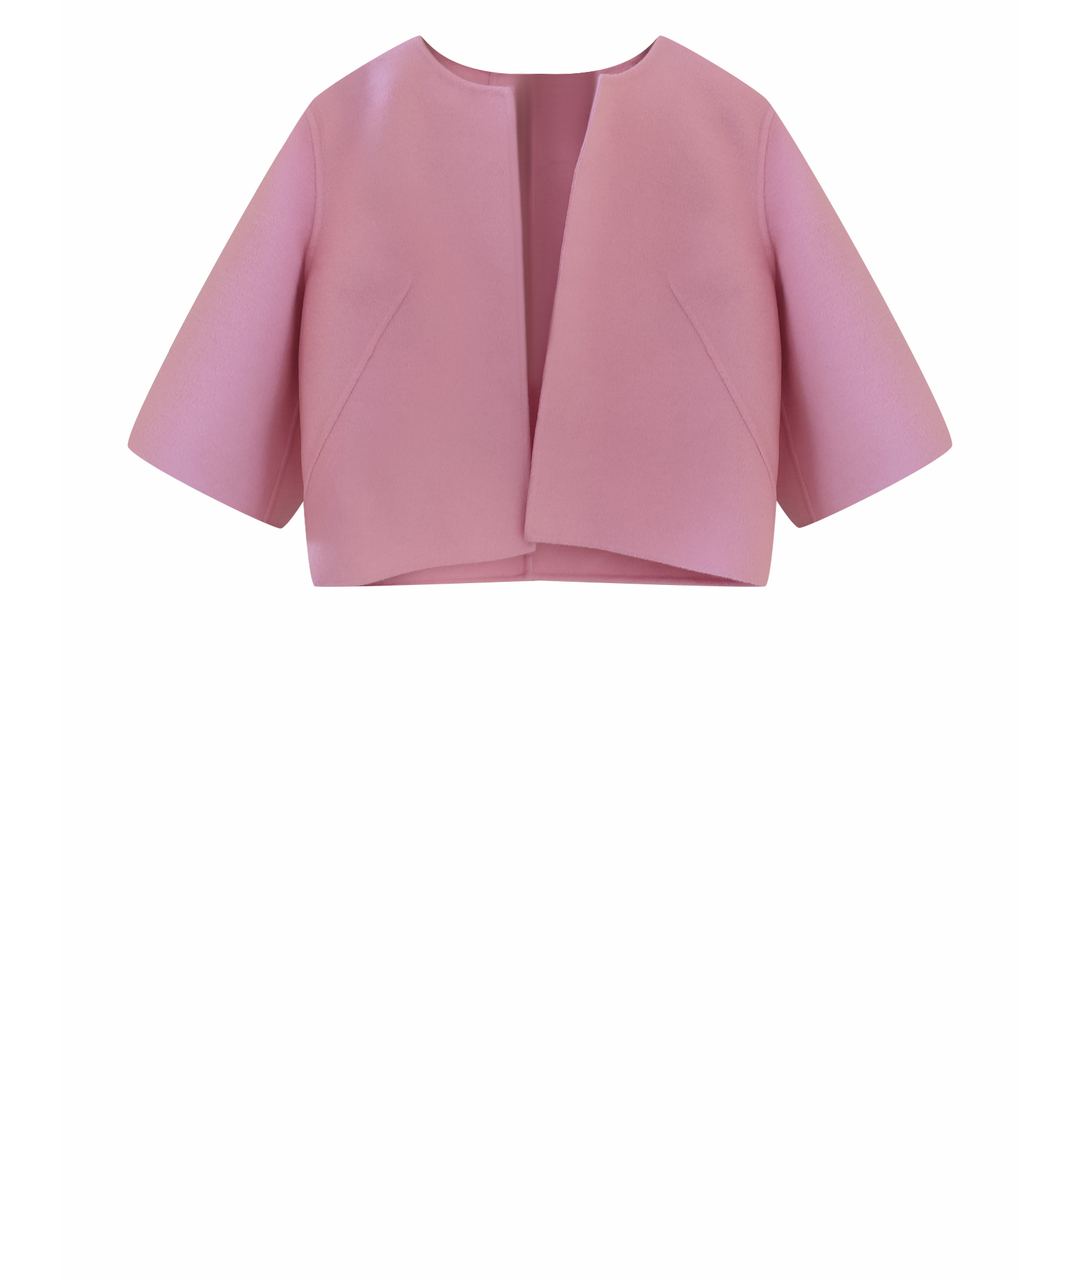 MICHAEL KORS Розовый шерстяной жакет/пиджак, фото 1